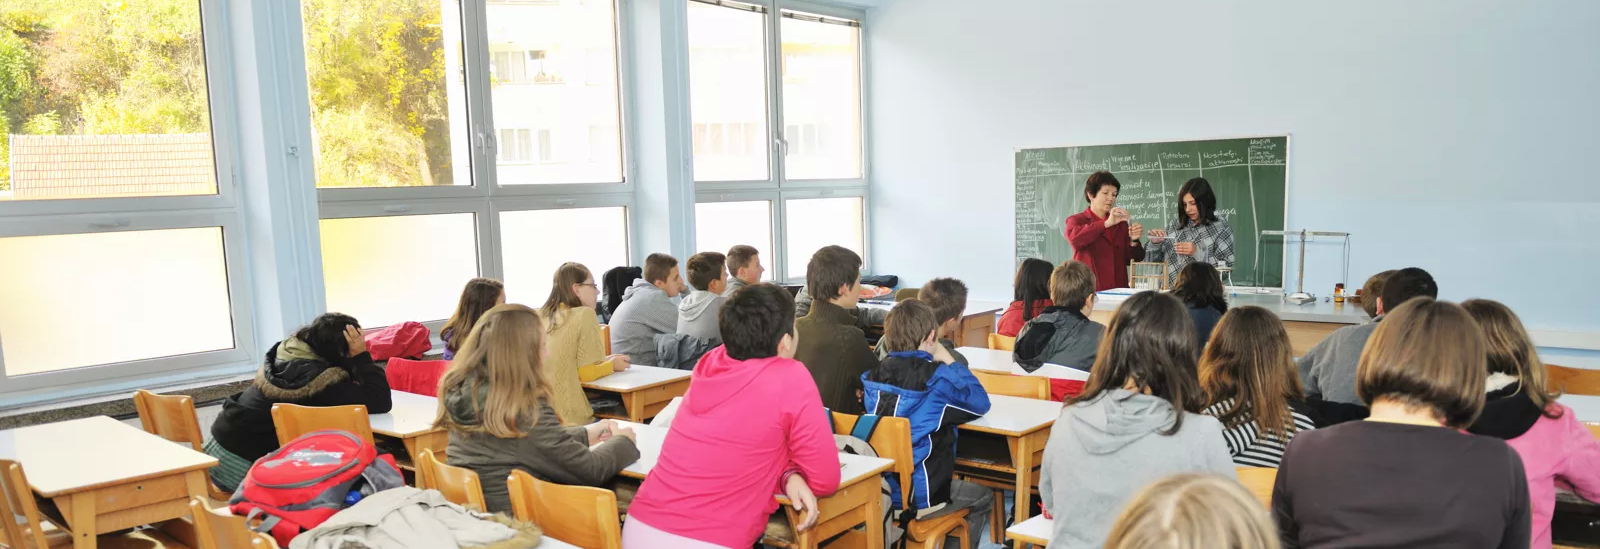 Foto eines Klassenraums mit Schülern und Lehrer vor Schultafel